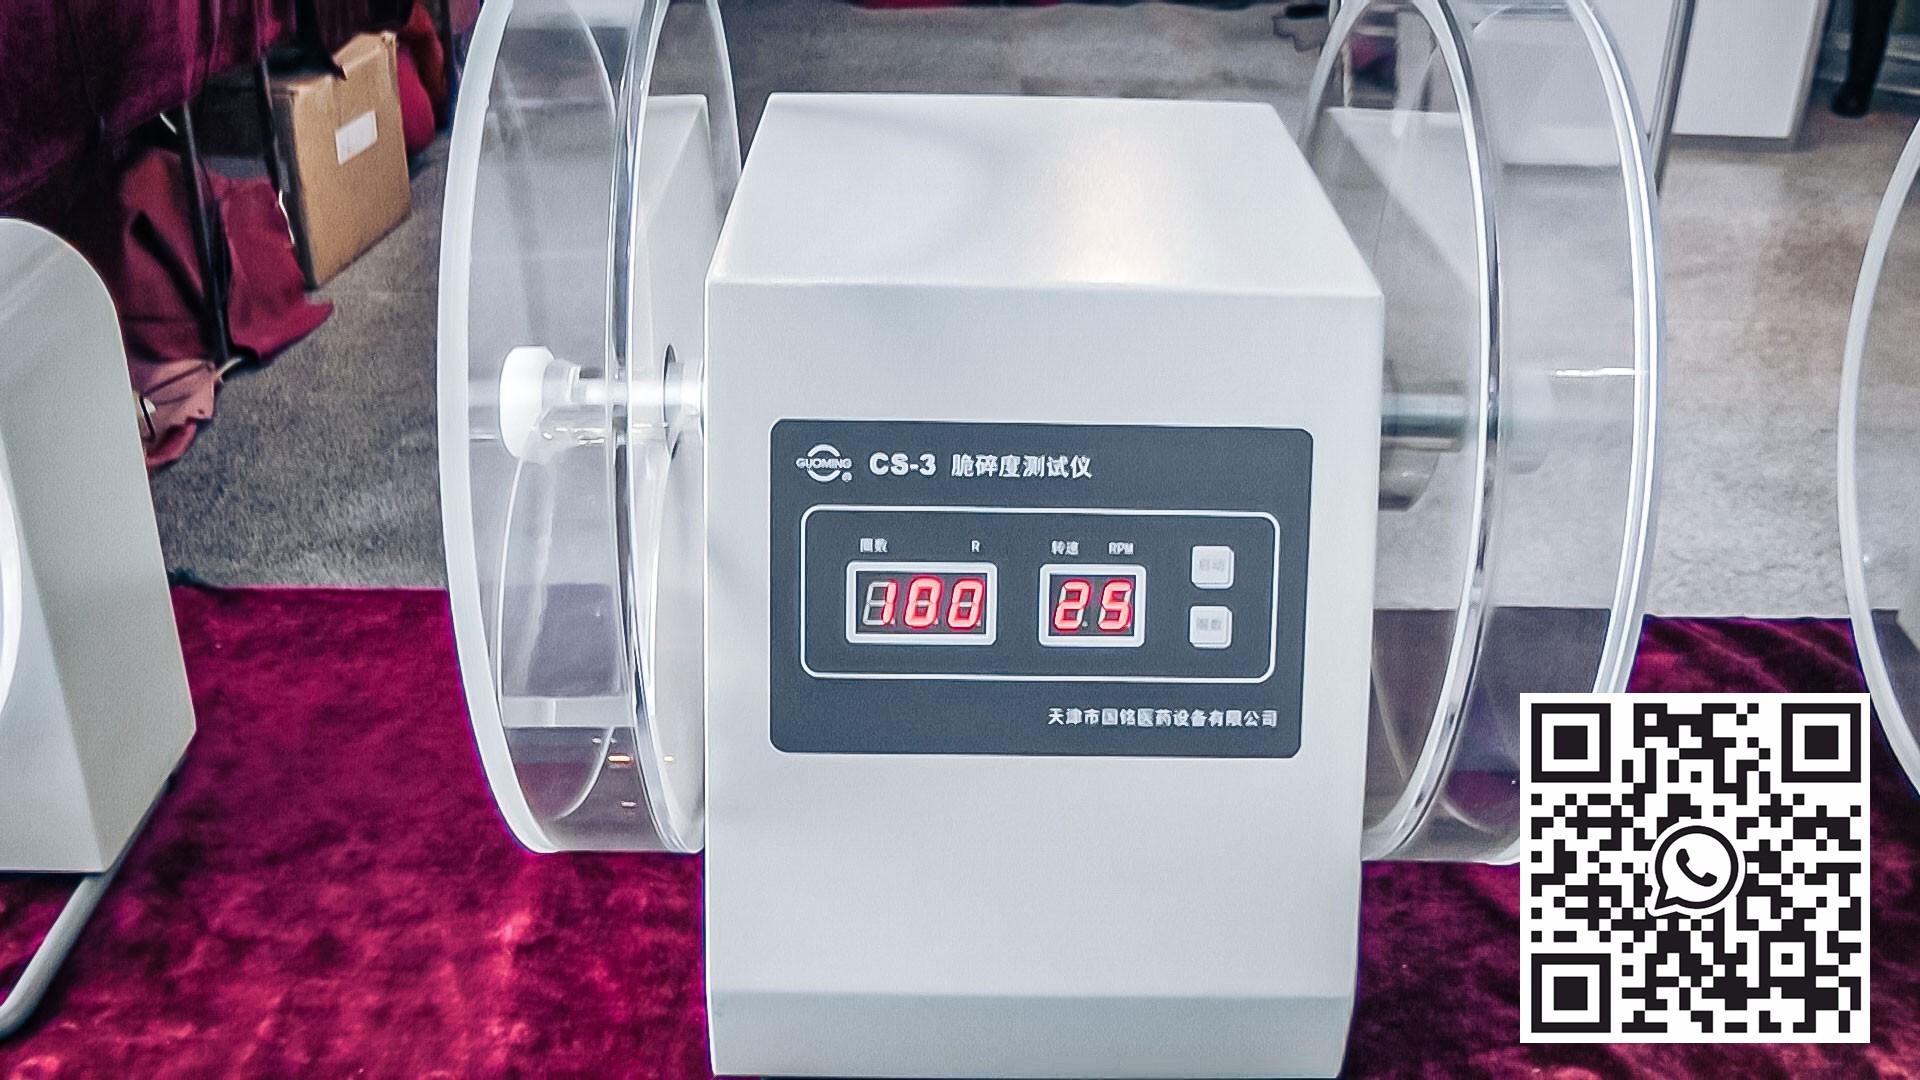 Automatyczny sprzęt do badania szybkości ścierania tabletek i kapsułek w produkcji farmaceutycznej Algierii